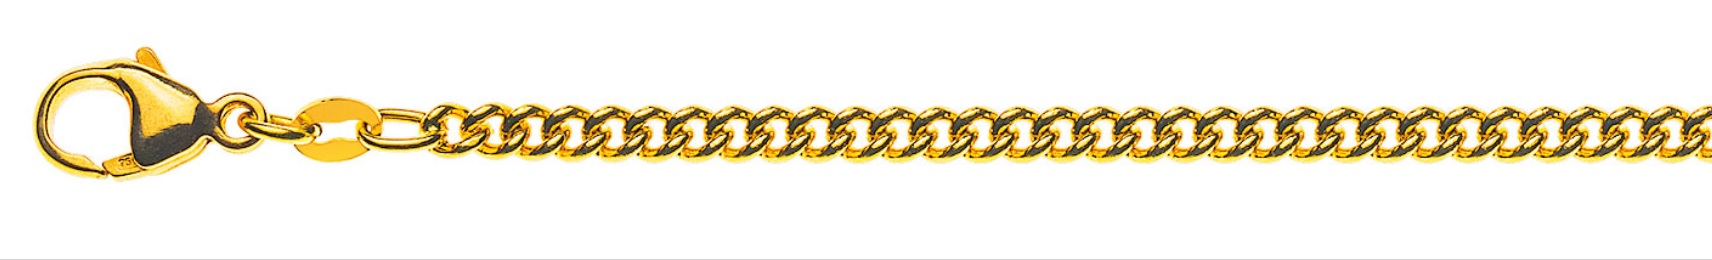 AURONOS Prestige Halskette Gelbgold 18K Rundpanzerkette 50cm 2.8mm